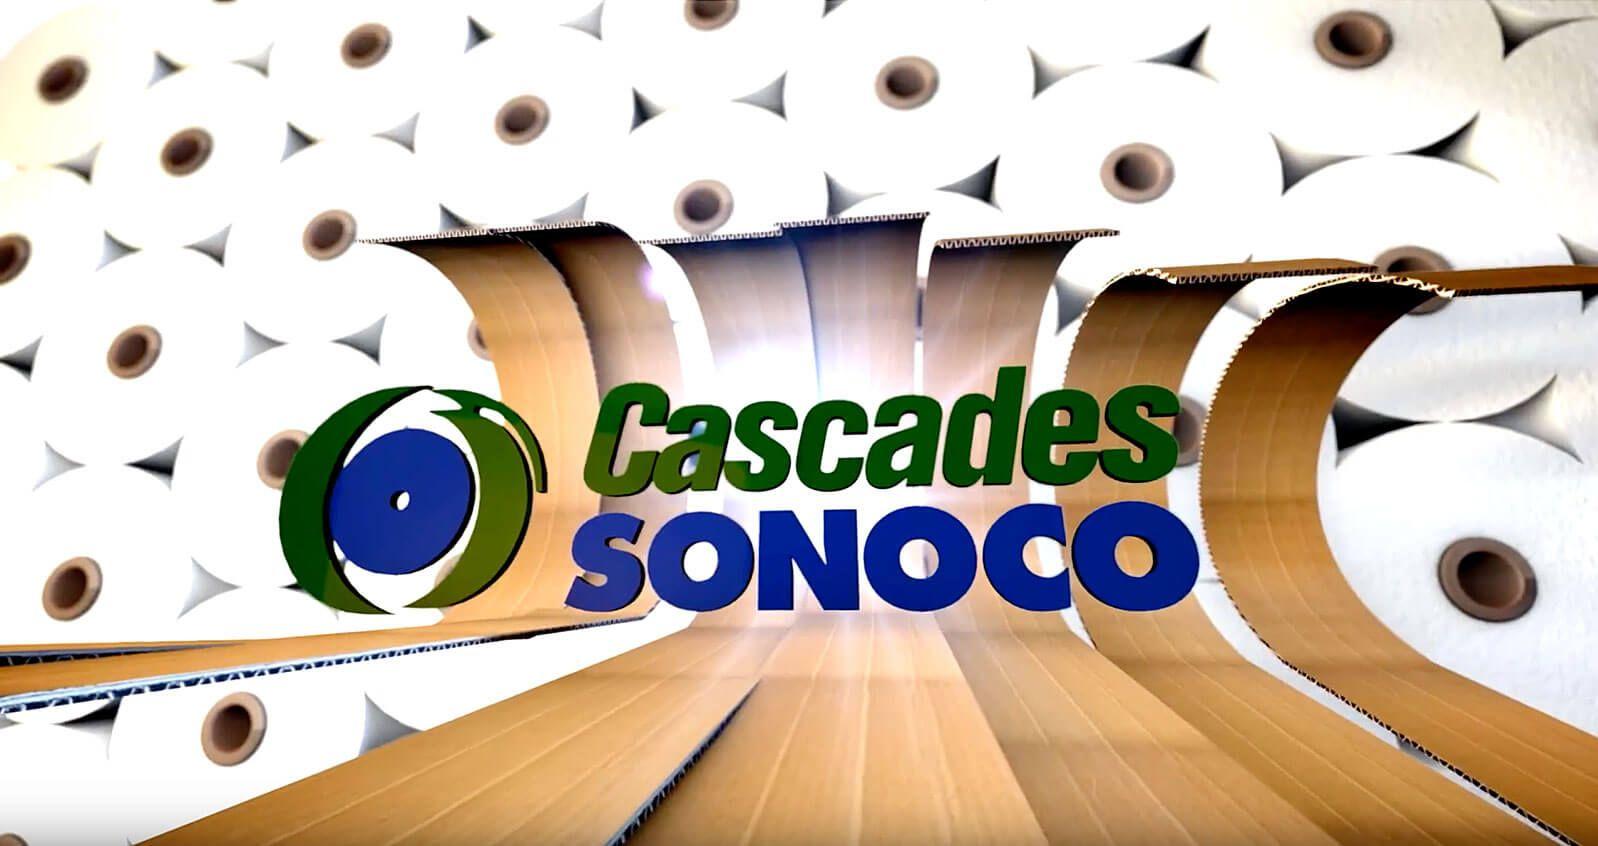 Sonoco Logo - Cascades Sonoco. Cascades Sonoco offers a full range of options